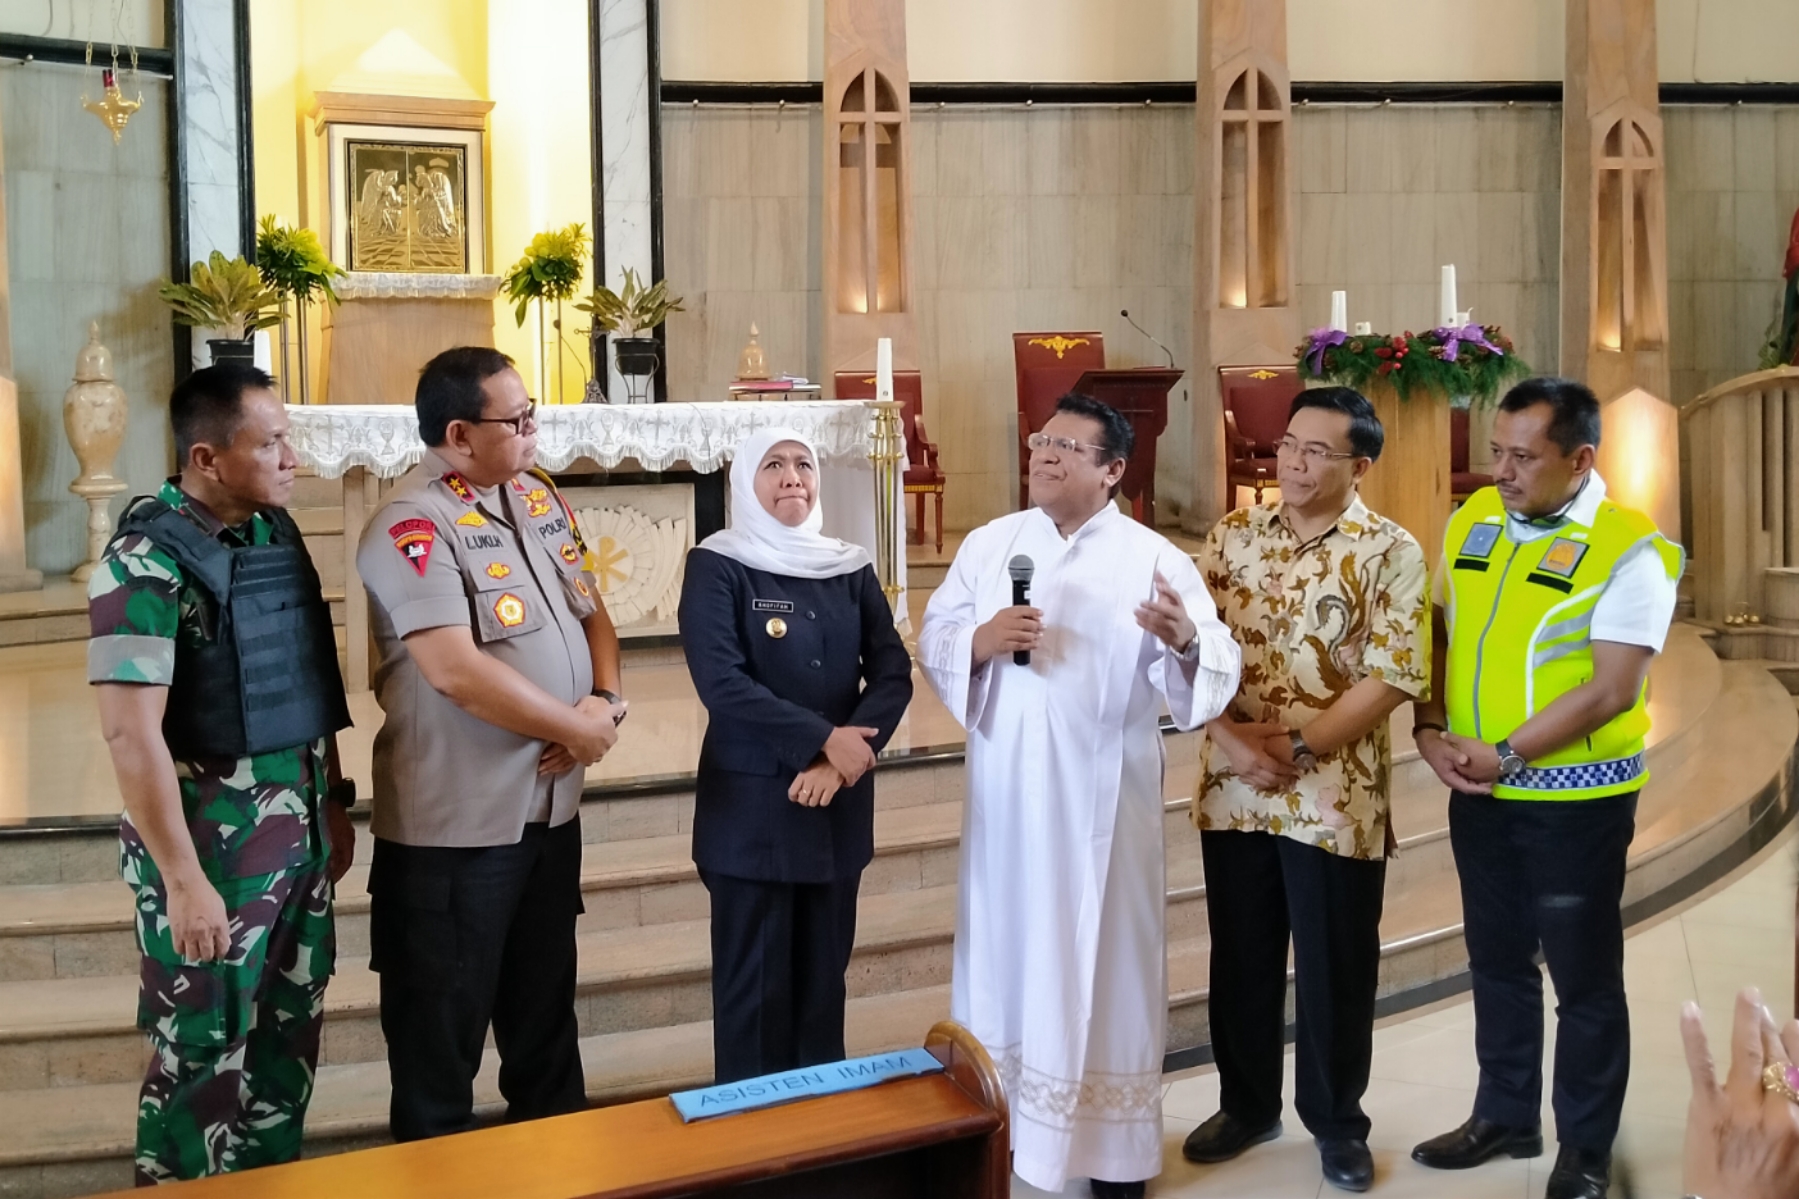 Gubernur Jatim, Khofifah Indar Parawansa (tiga dari kiri) bersama jajaran Forkopimda Jatim melakukan sidak pengamanan di Gereja Gembala Yang Baik, Surabaya, Senin 23 Desember 2019. (Foto: Fariz/ngopibareng.id)